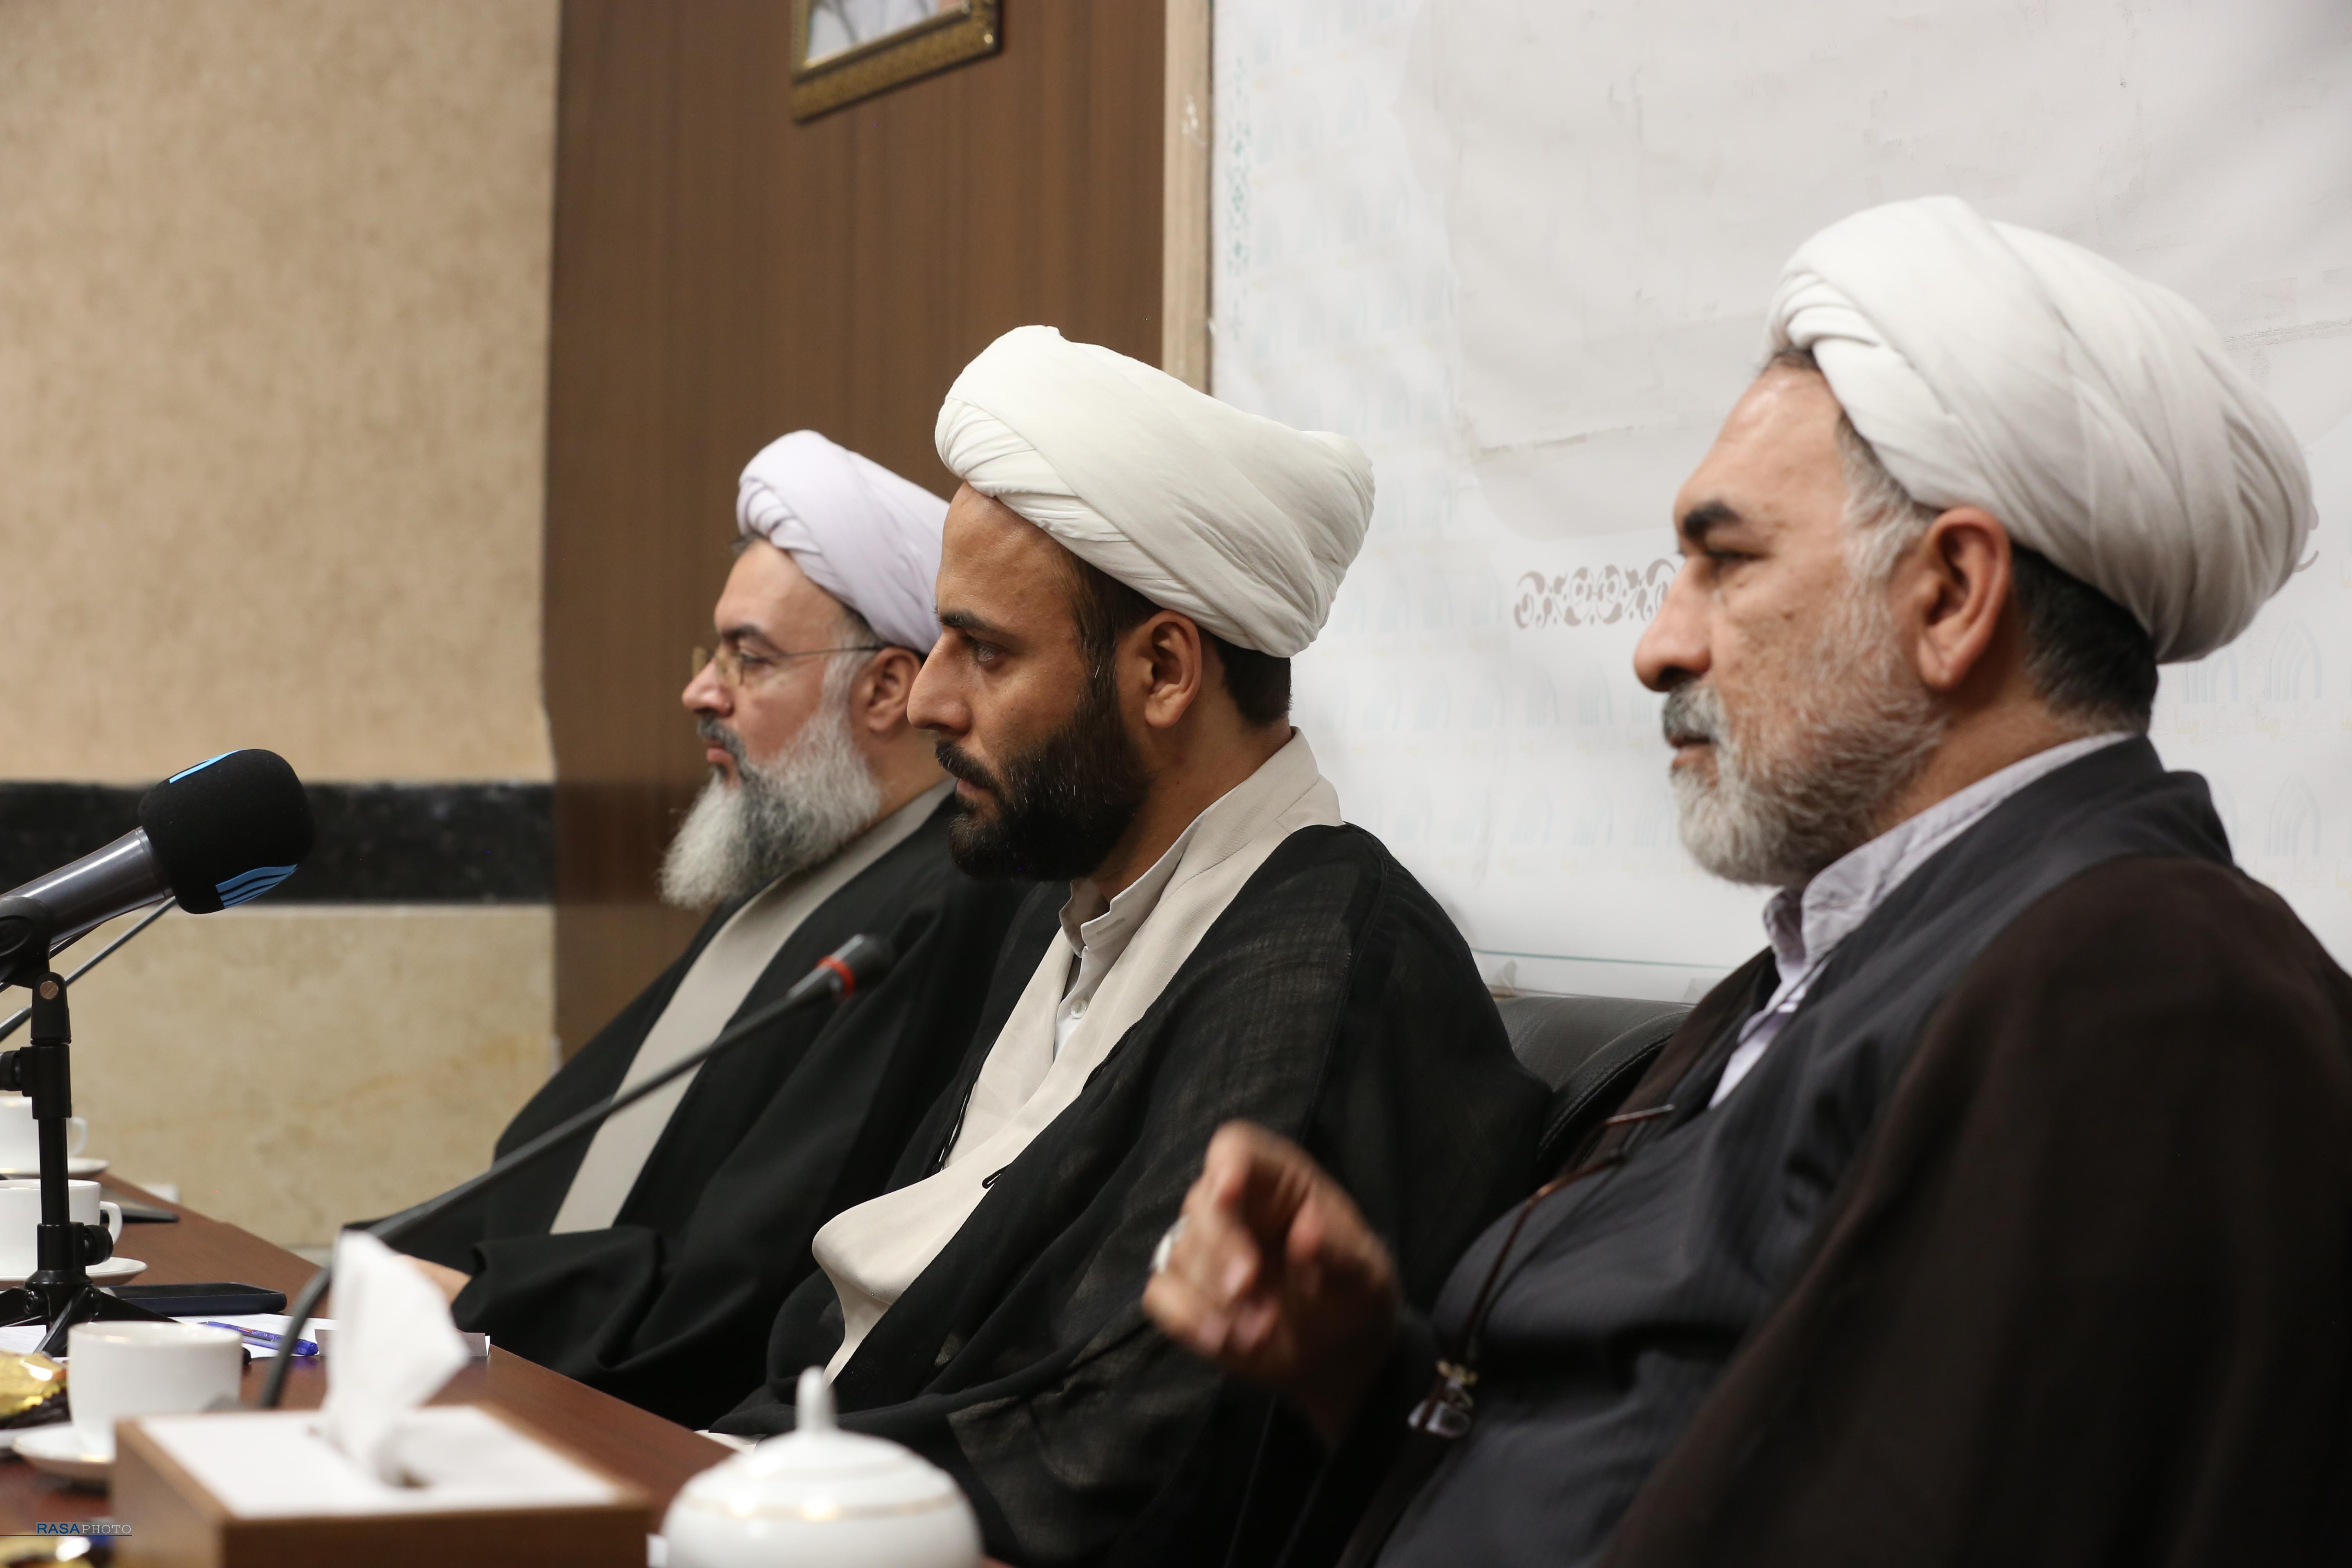 جامعه ایران هیچگاه بی دین نمی شود/ سنجش دینداری در ایران، نیاز به پژوهش عمیق دارد